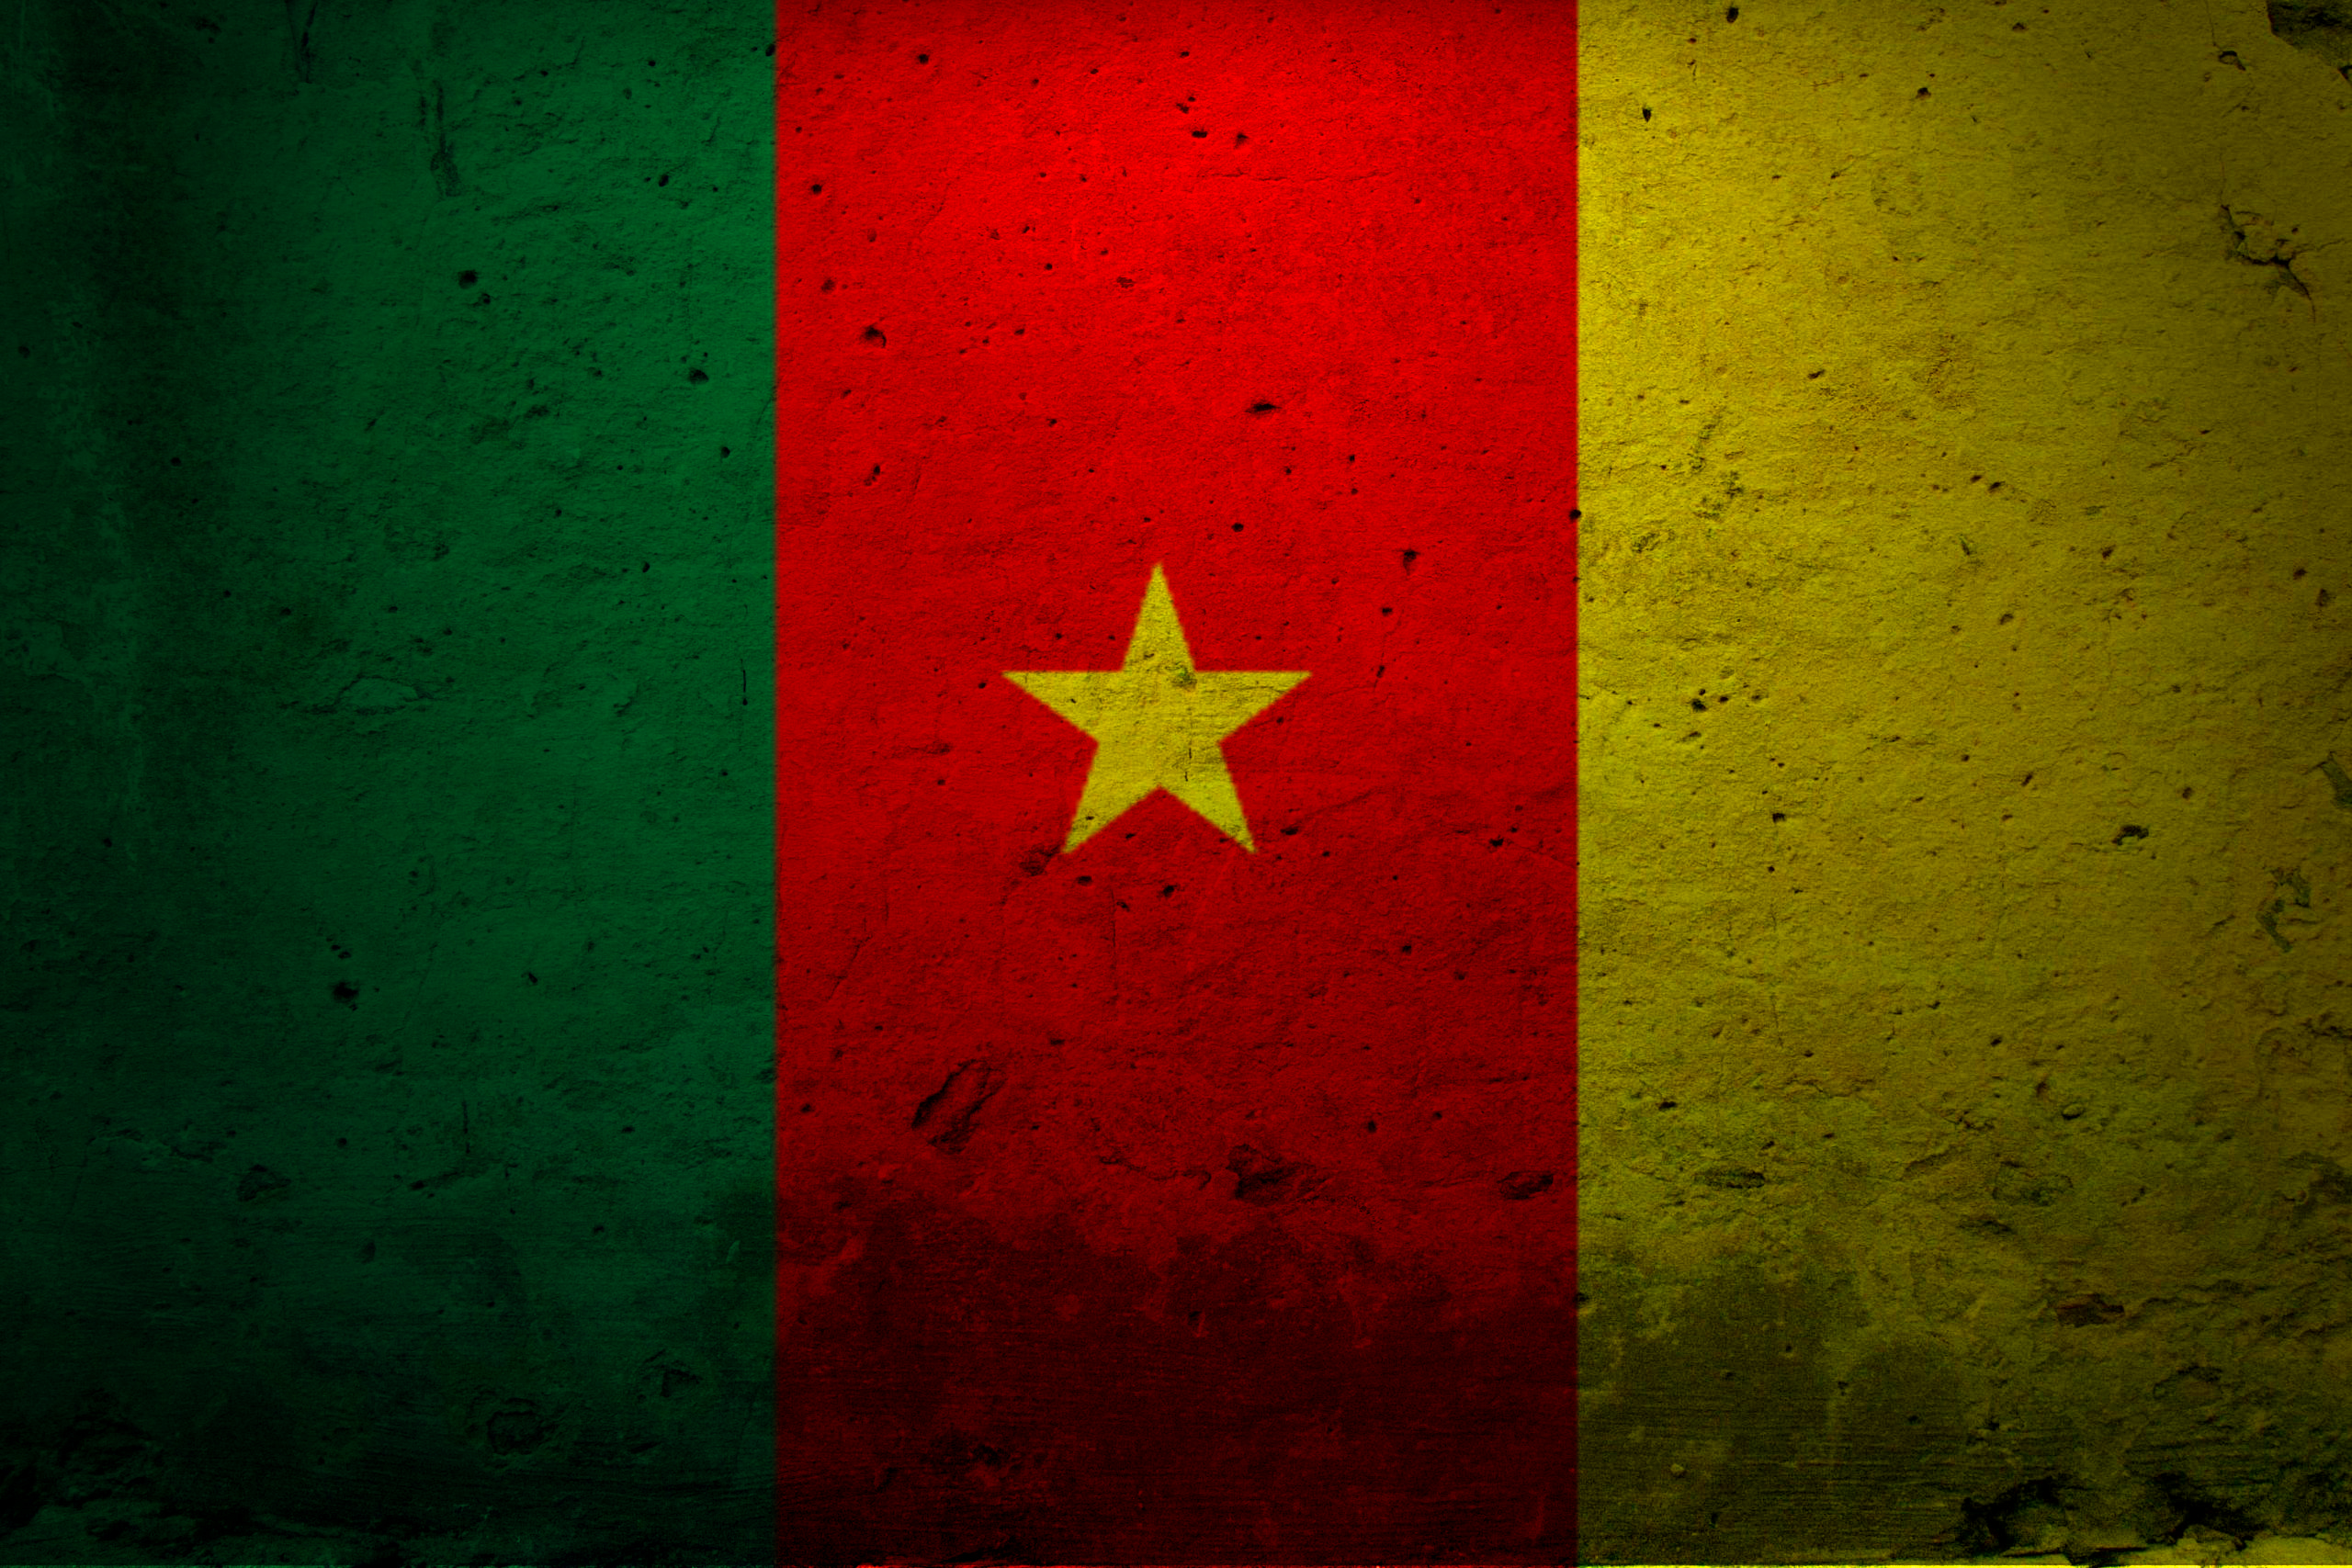 флаги, Камерун - обои на рабочий стол